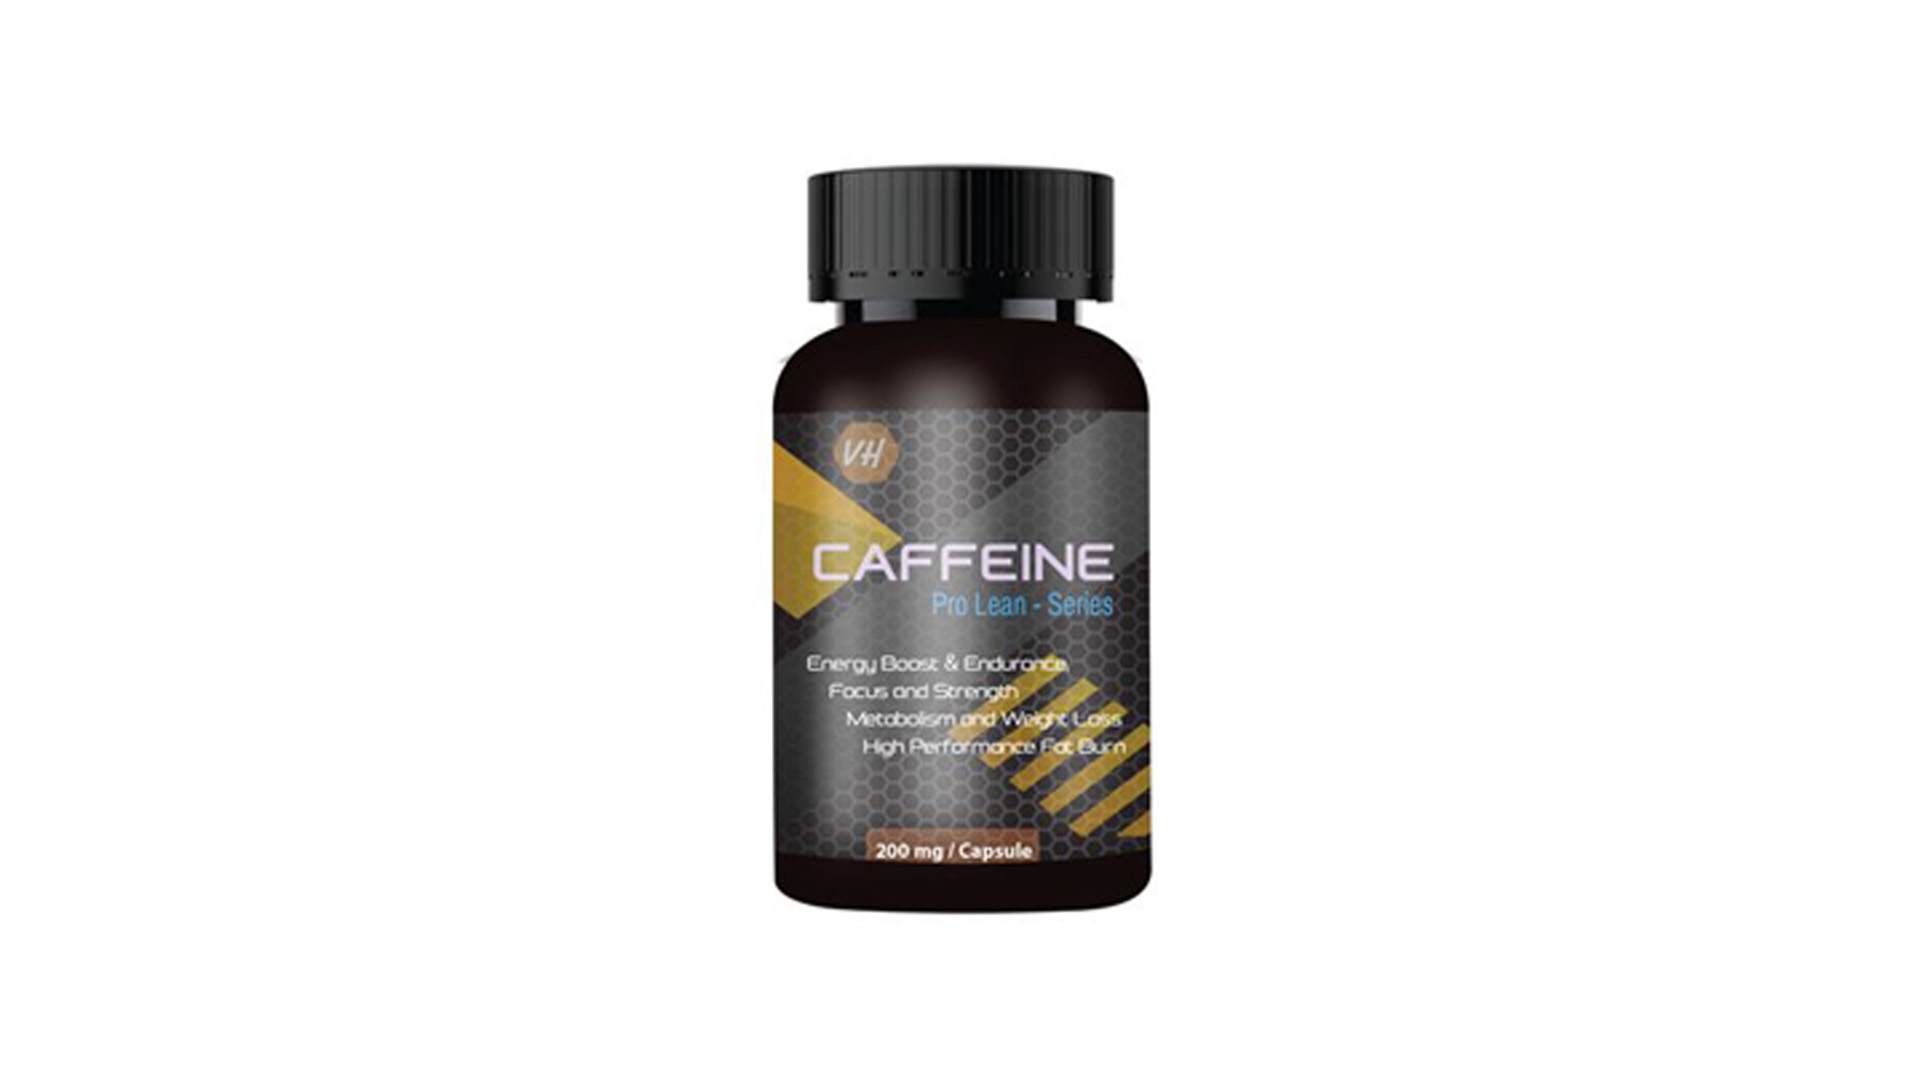 Vitaminhaat Caffeine Pro Lean - Series Capsule 